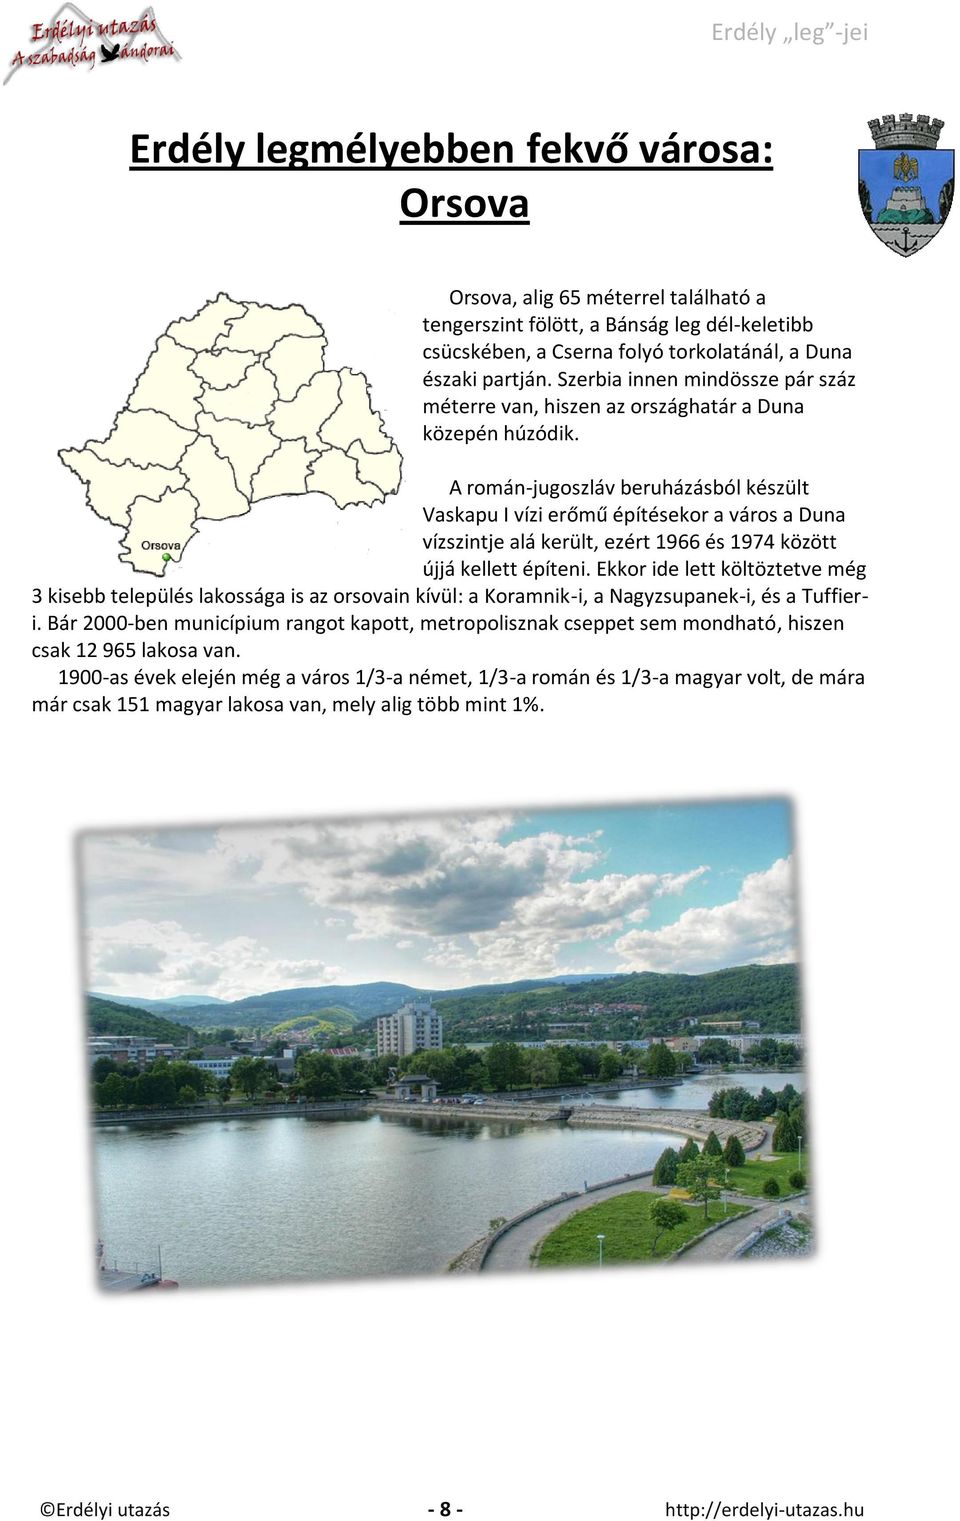 A román-jugoszláv beruházásból készült Vaskapu I vízi erőmű építésekor a város a Duna vízszintje alá került, ezért 1966 és 1974 között újjá kellett építeni.